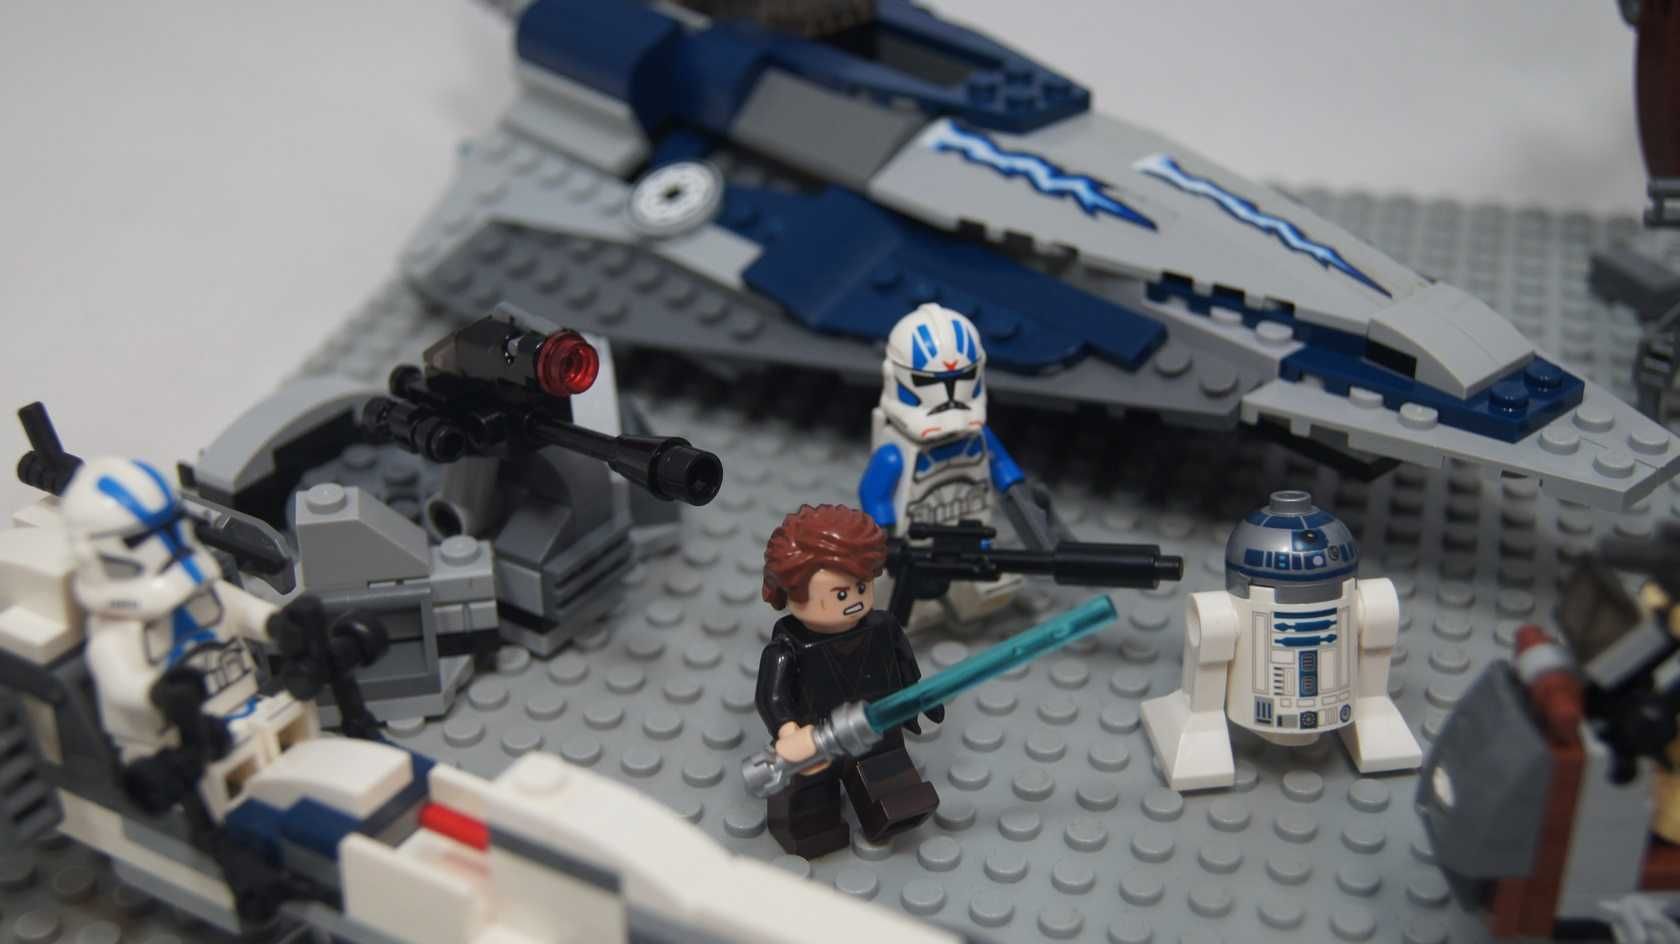 Lego Star Wars 501 legion clone vs droid droideka anakin starfighter